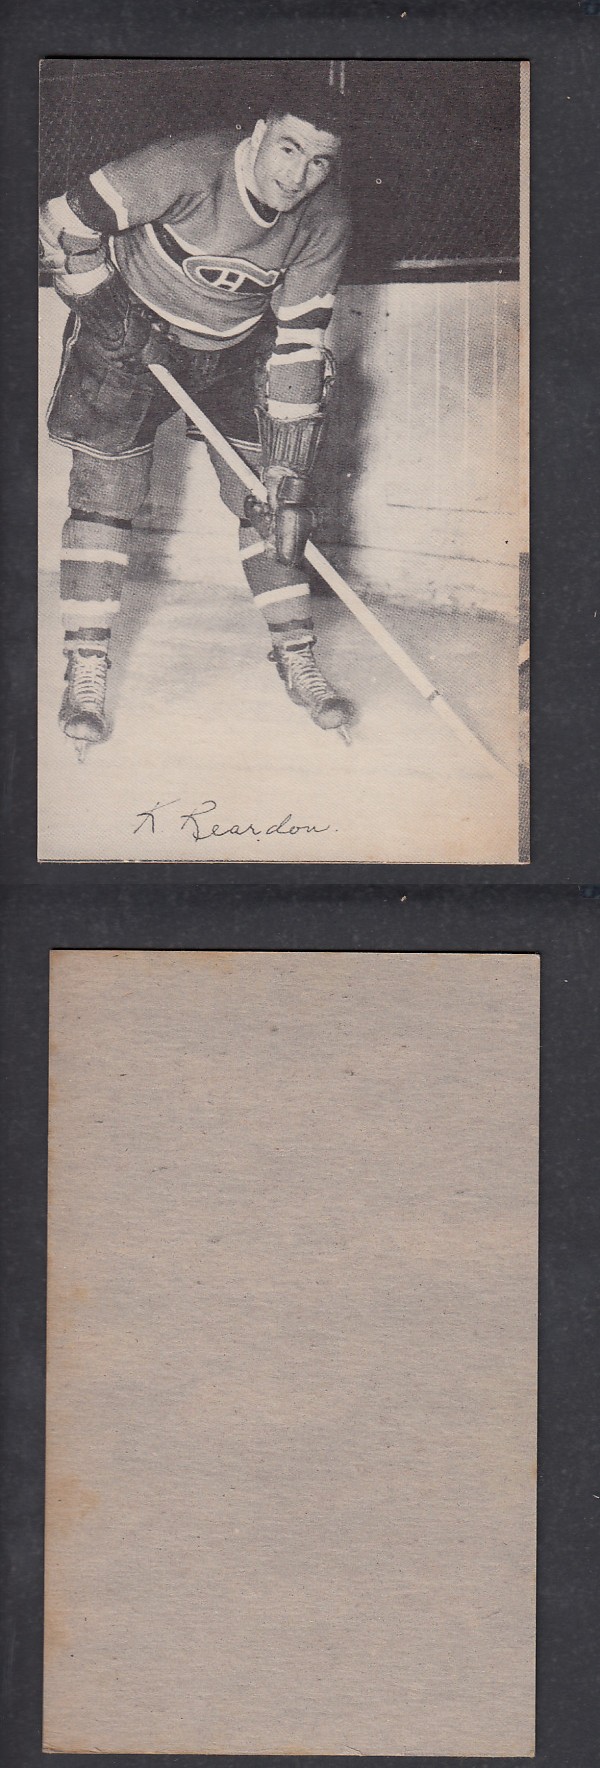 1948-52 EXHIBITS HOCKEY CARD K. REARDON photo